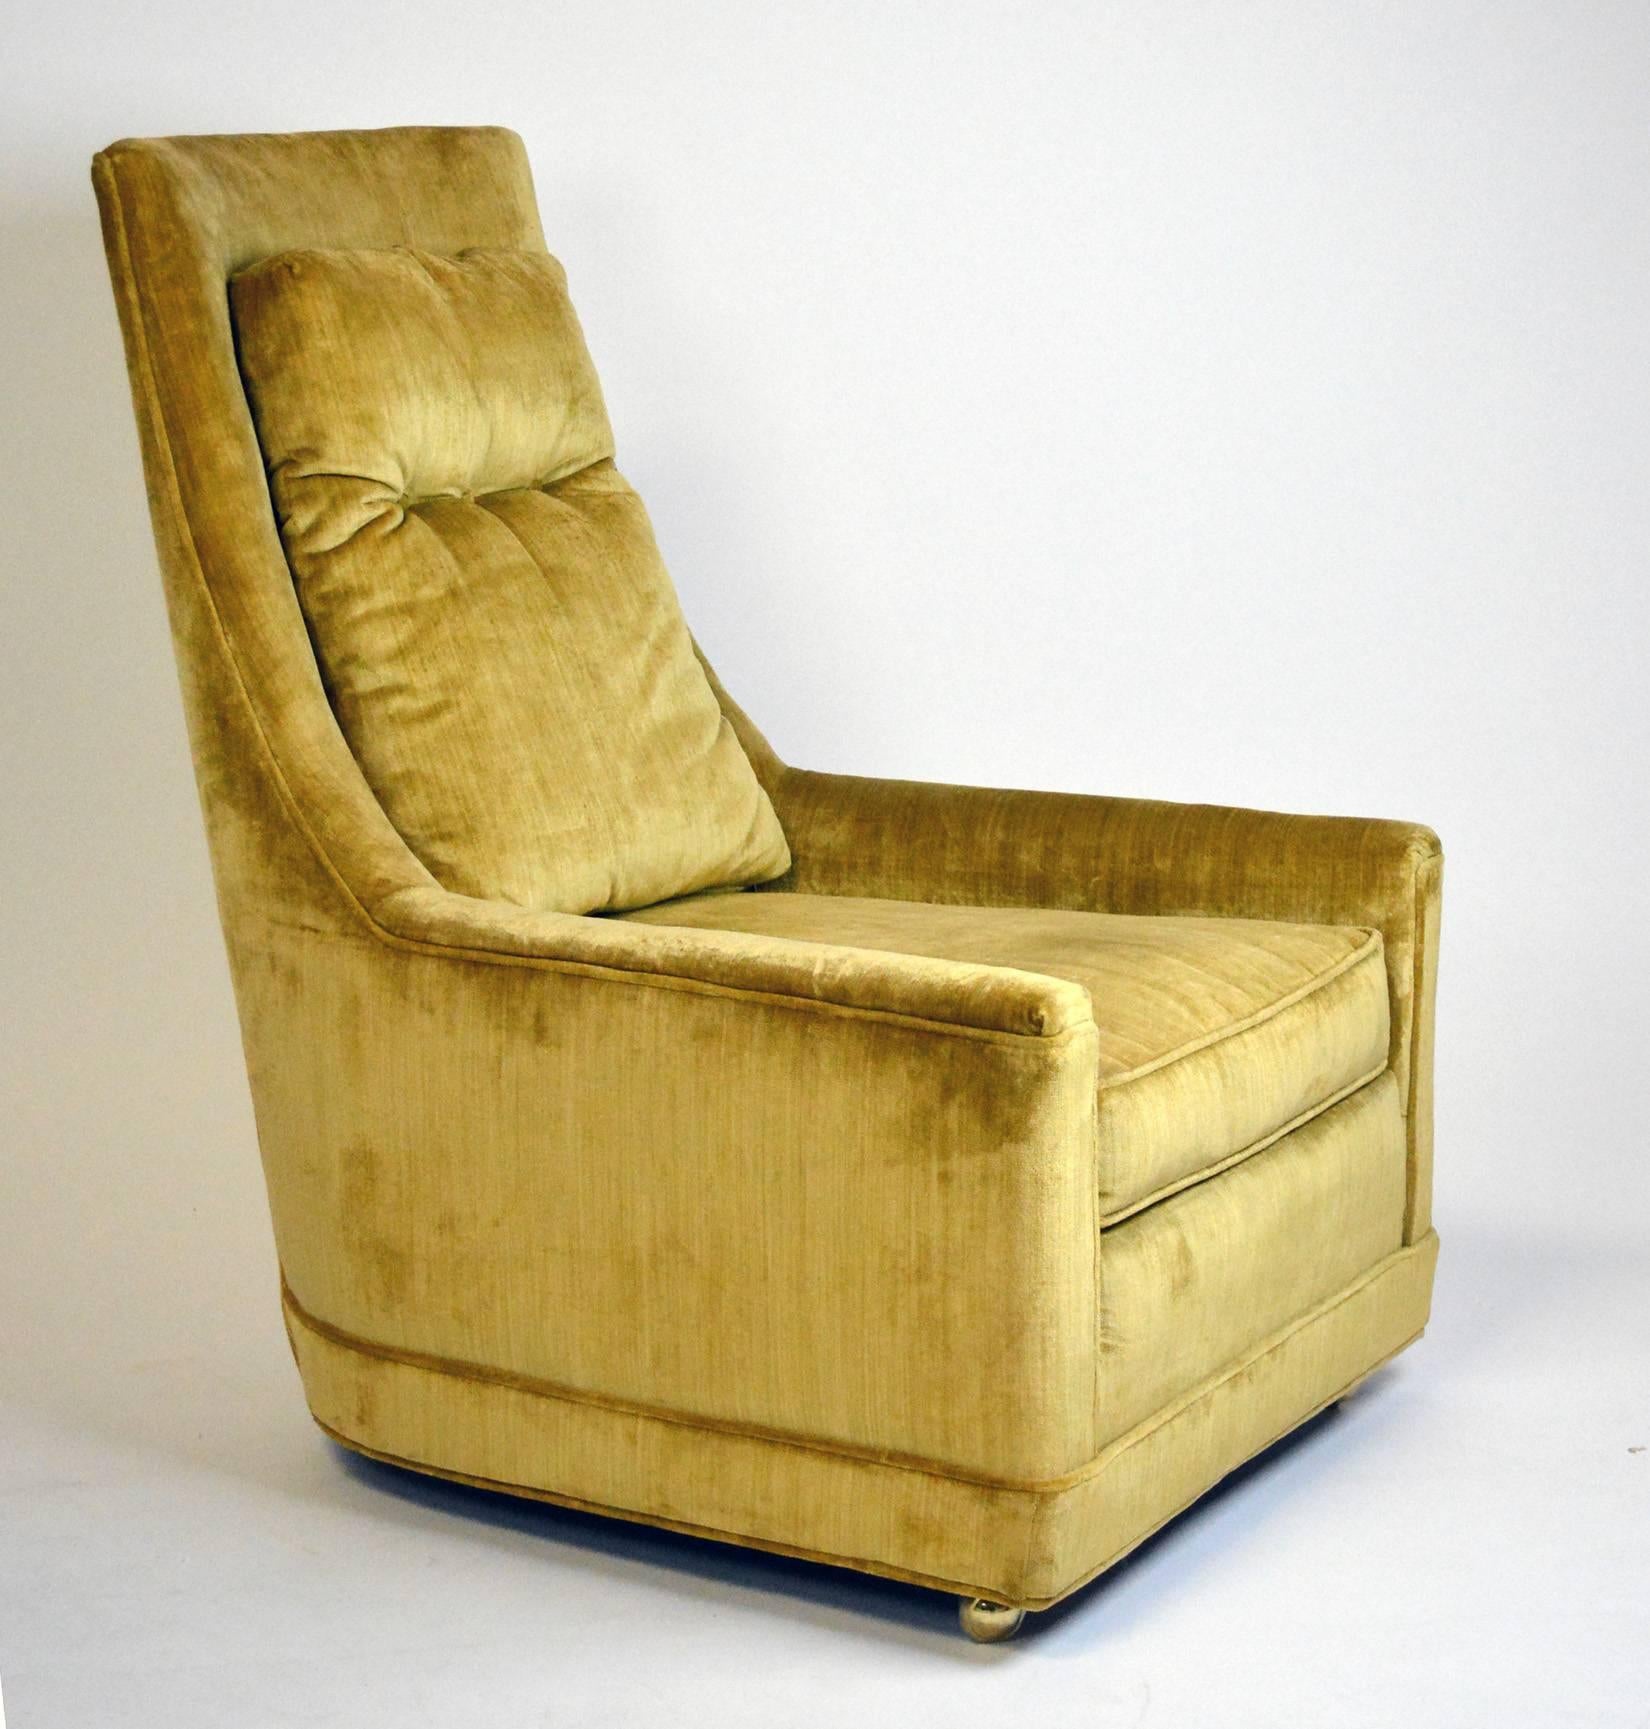 Ein Paar glamouröser Hollywood-Regency-Sessel aus den 1970er Jahren mit hoher Rückenlehne und originaler Samtpolsterung. Der niedrige Arm geht in eine hohe Rückenlehne mit einem losen Rückenkissen über, das mit drei Knöpfen getuftet ist. Die Stühle